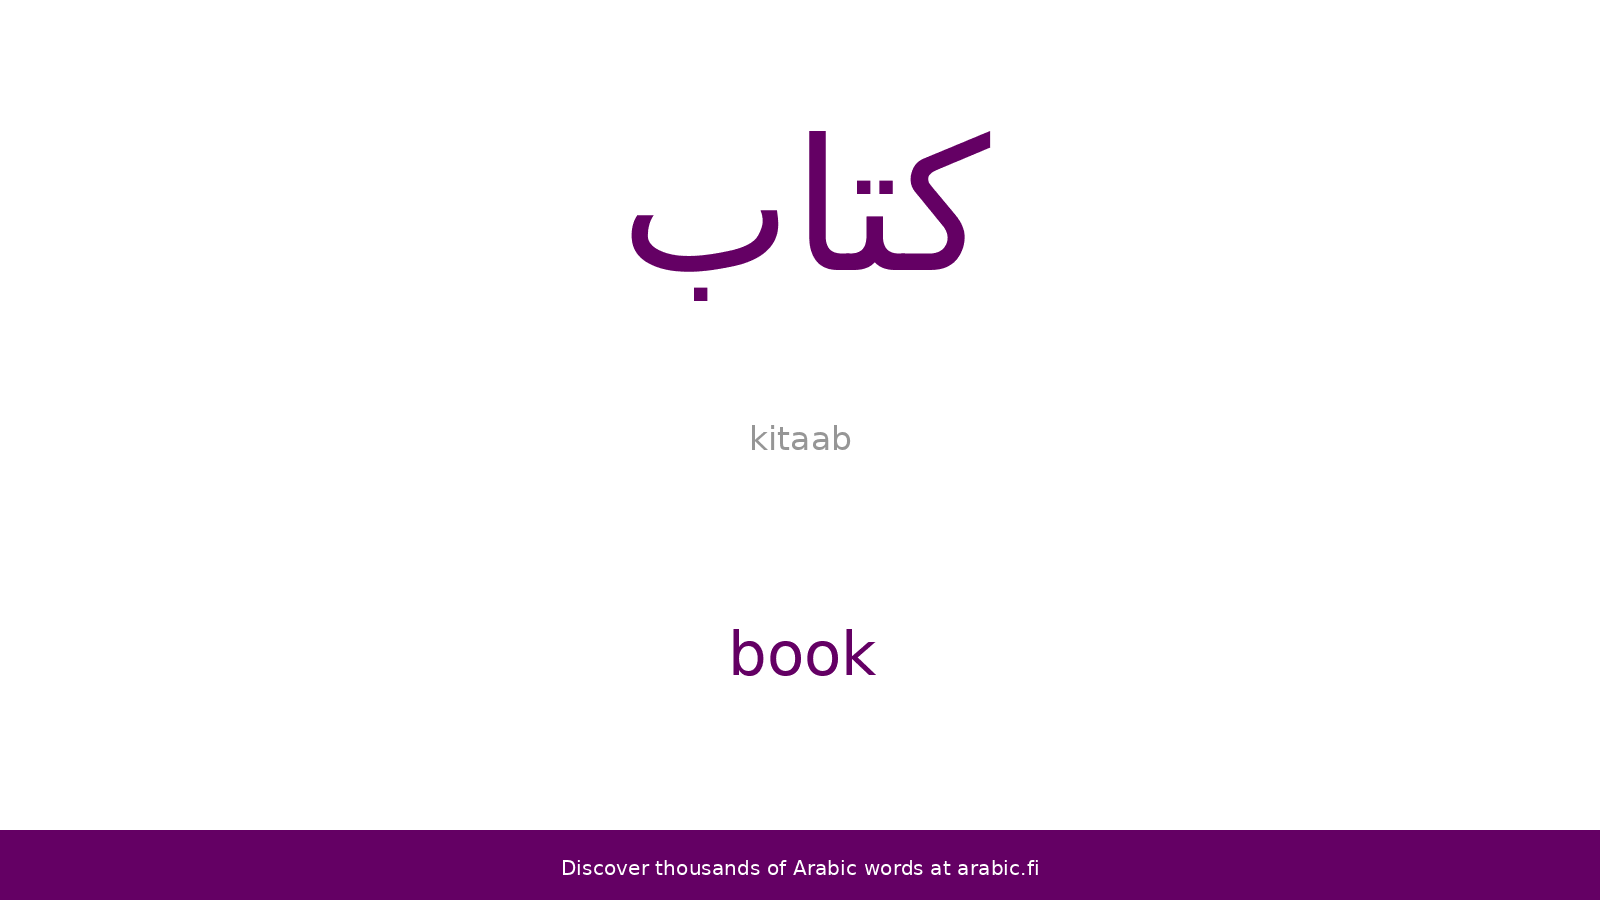 Book – an Arabic word